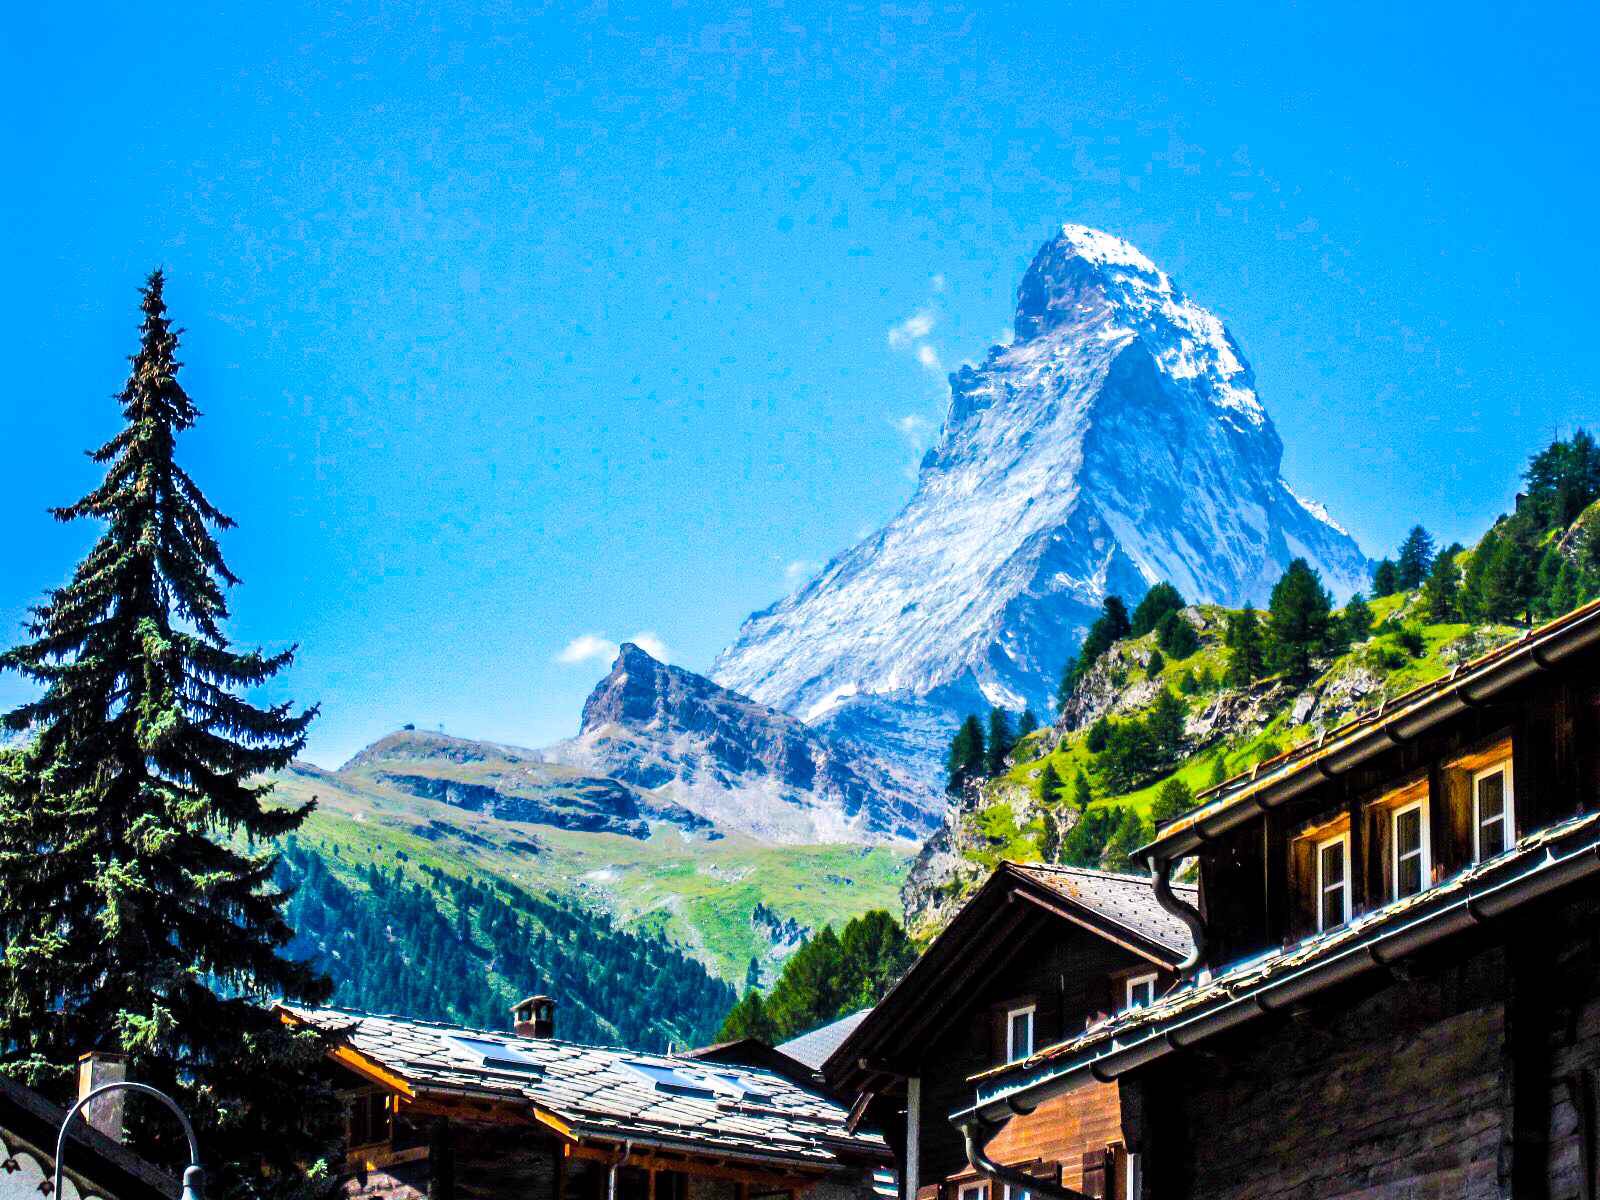 スイス旅行 マッターホルン グレッシャー パラダイス クラインマッターホルン展望台 への登り方 プチ初老ころんのコロコロ婚活講義